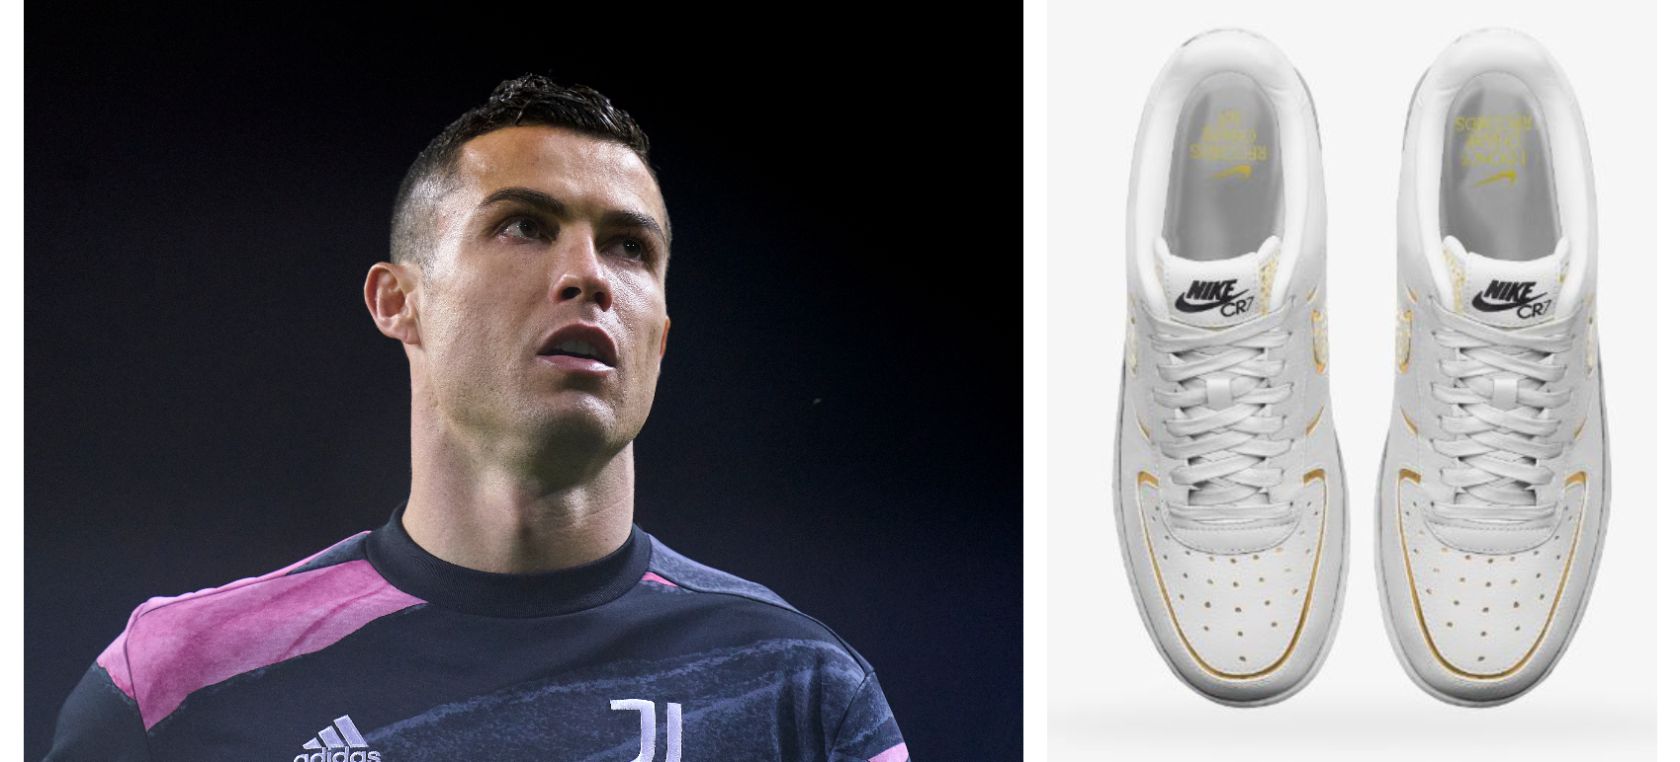 Roux propiedad manipular Nike lanza unas zapatillas diseñadas por Cristiano Ronaldo | Moda y Belleza  | LOS40